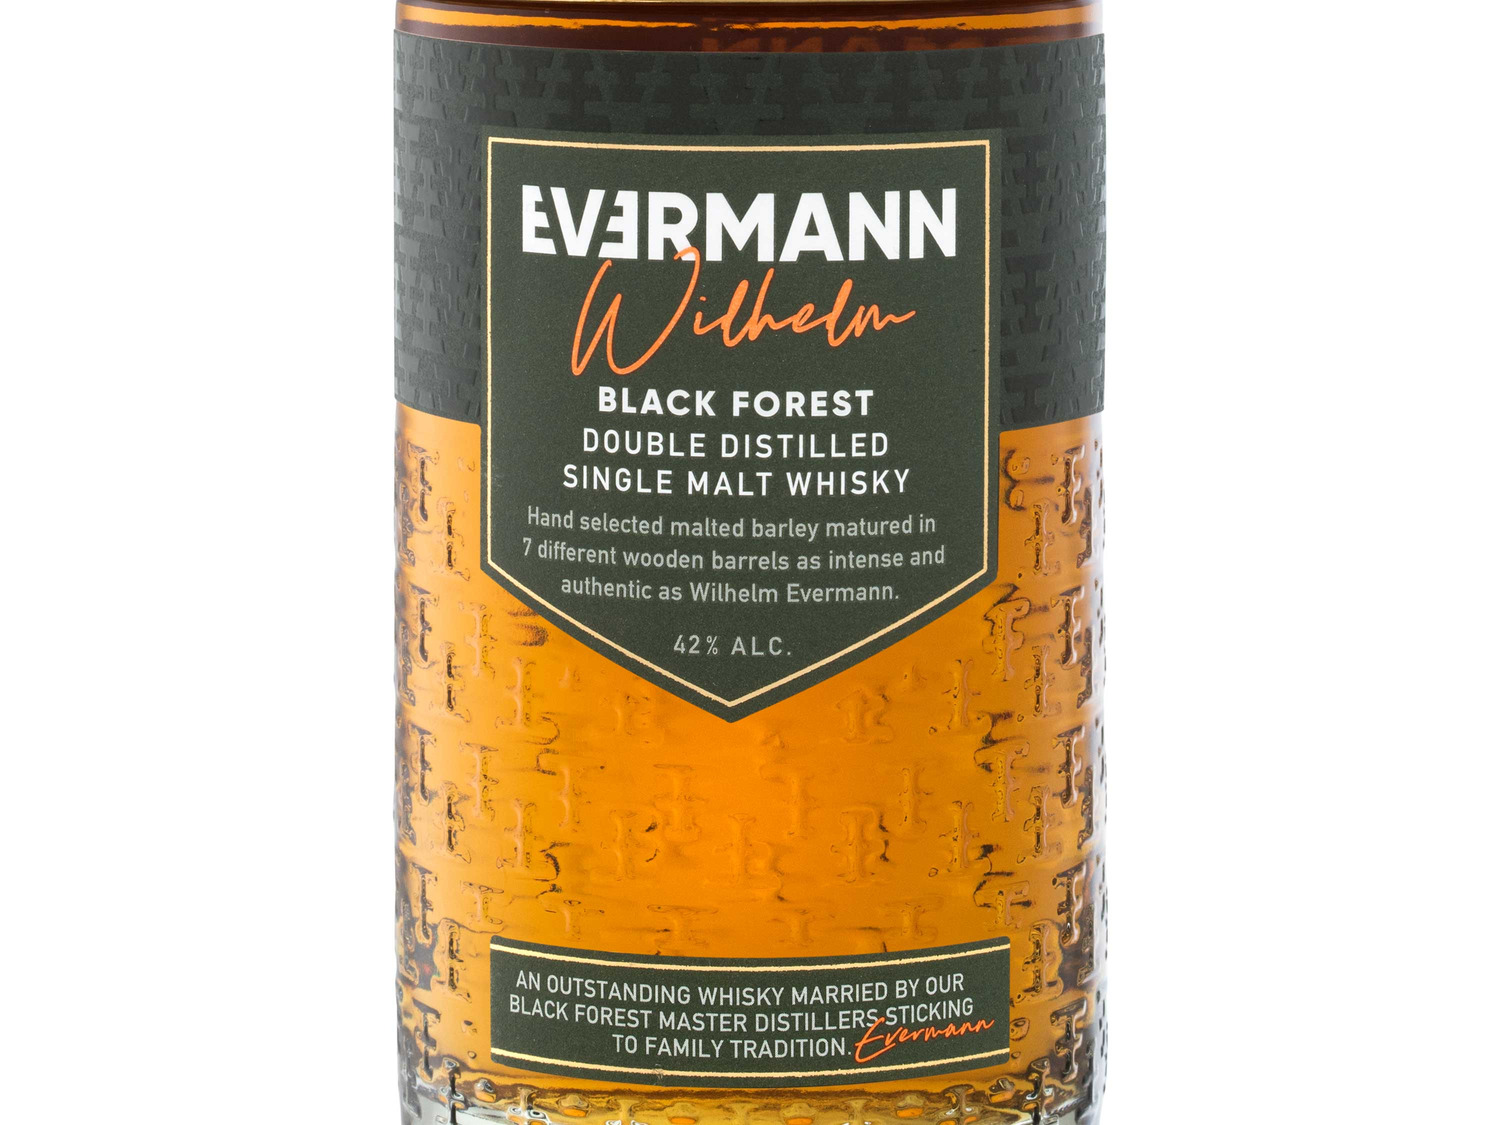 Evermann Wilhelm Black Forest Single Malt Whisky 42% V… | Whisky